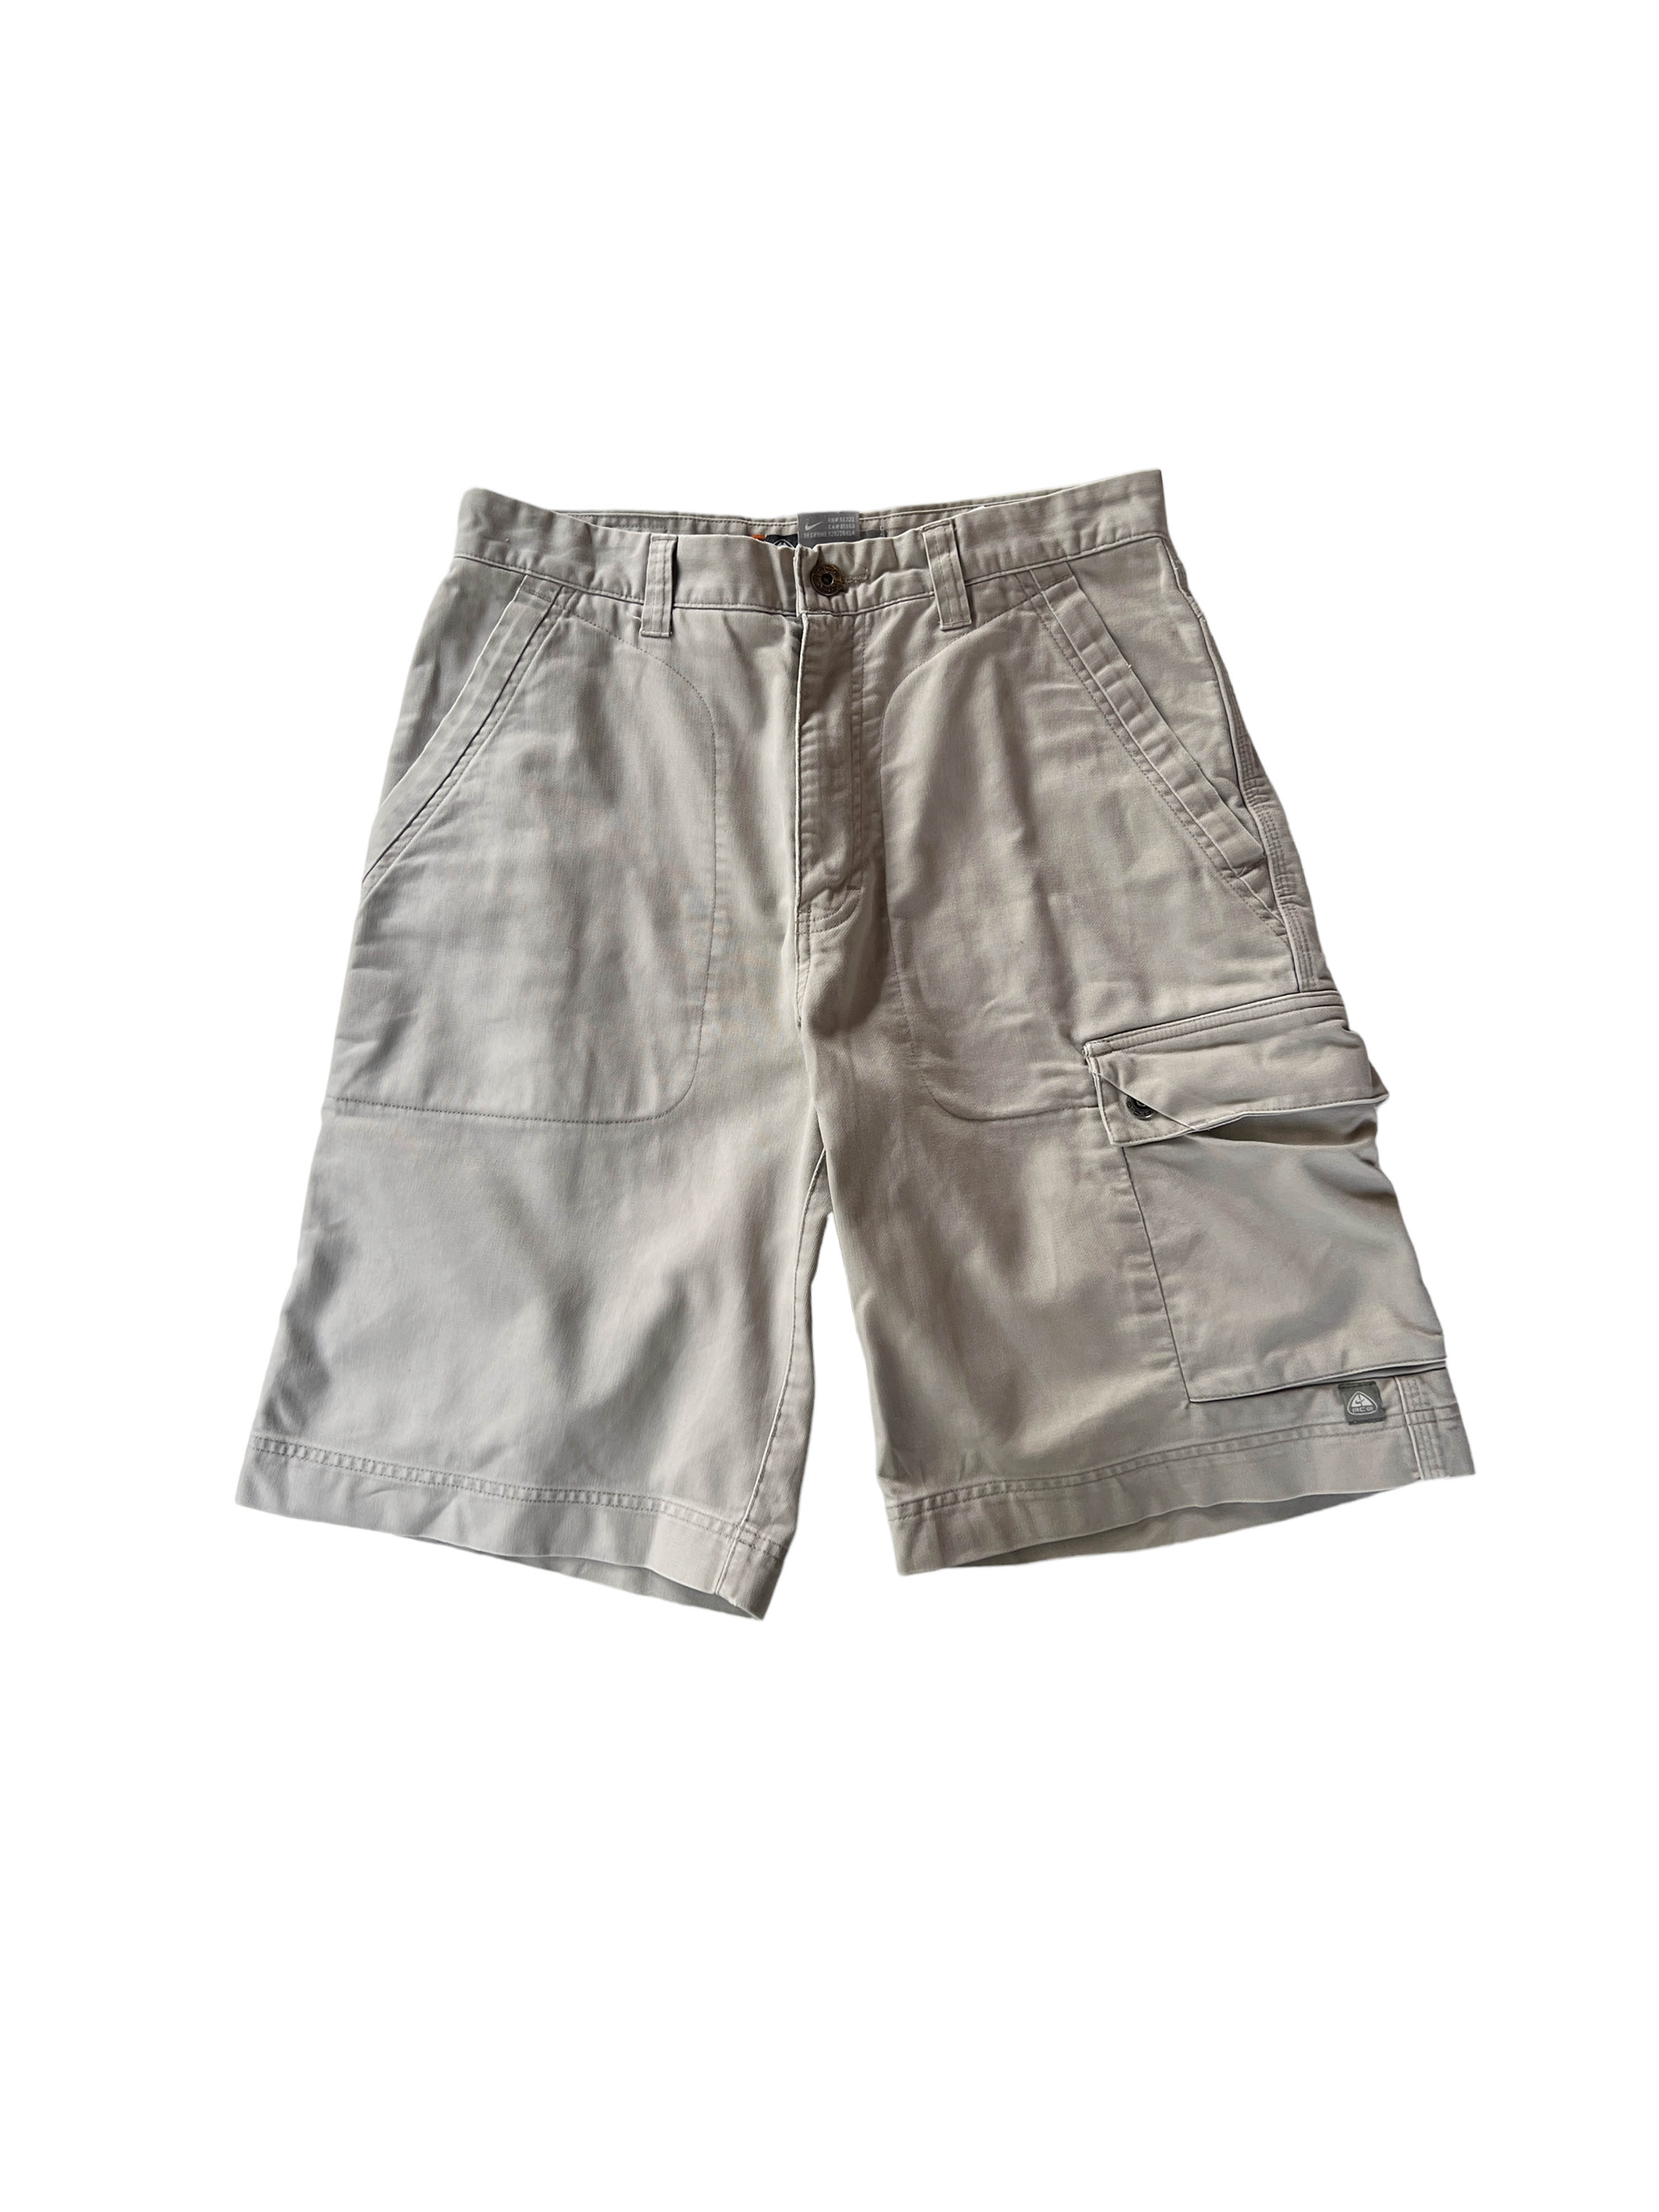 ACG outdoor shorts